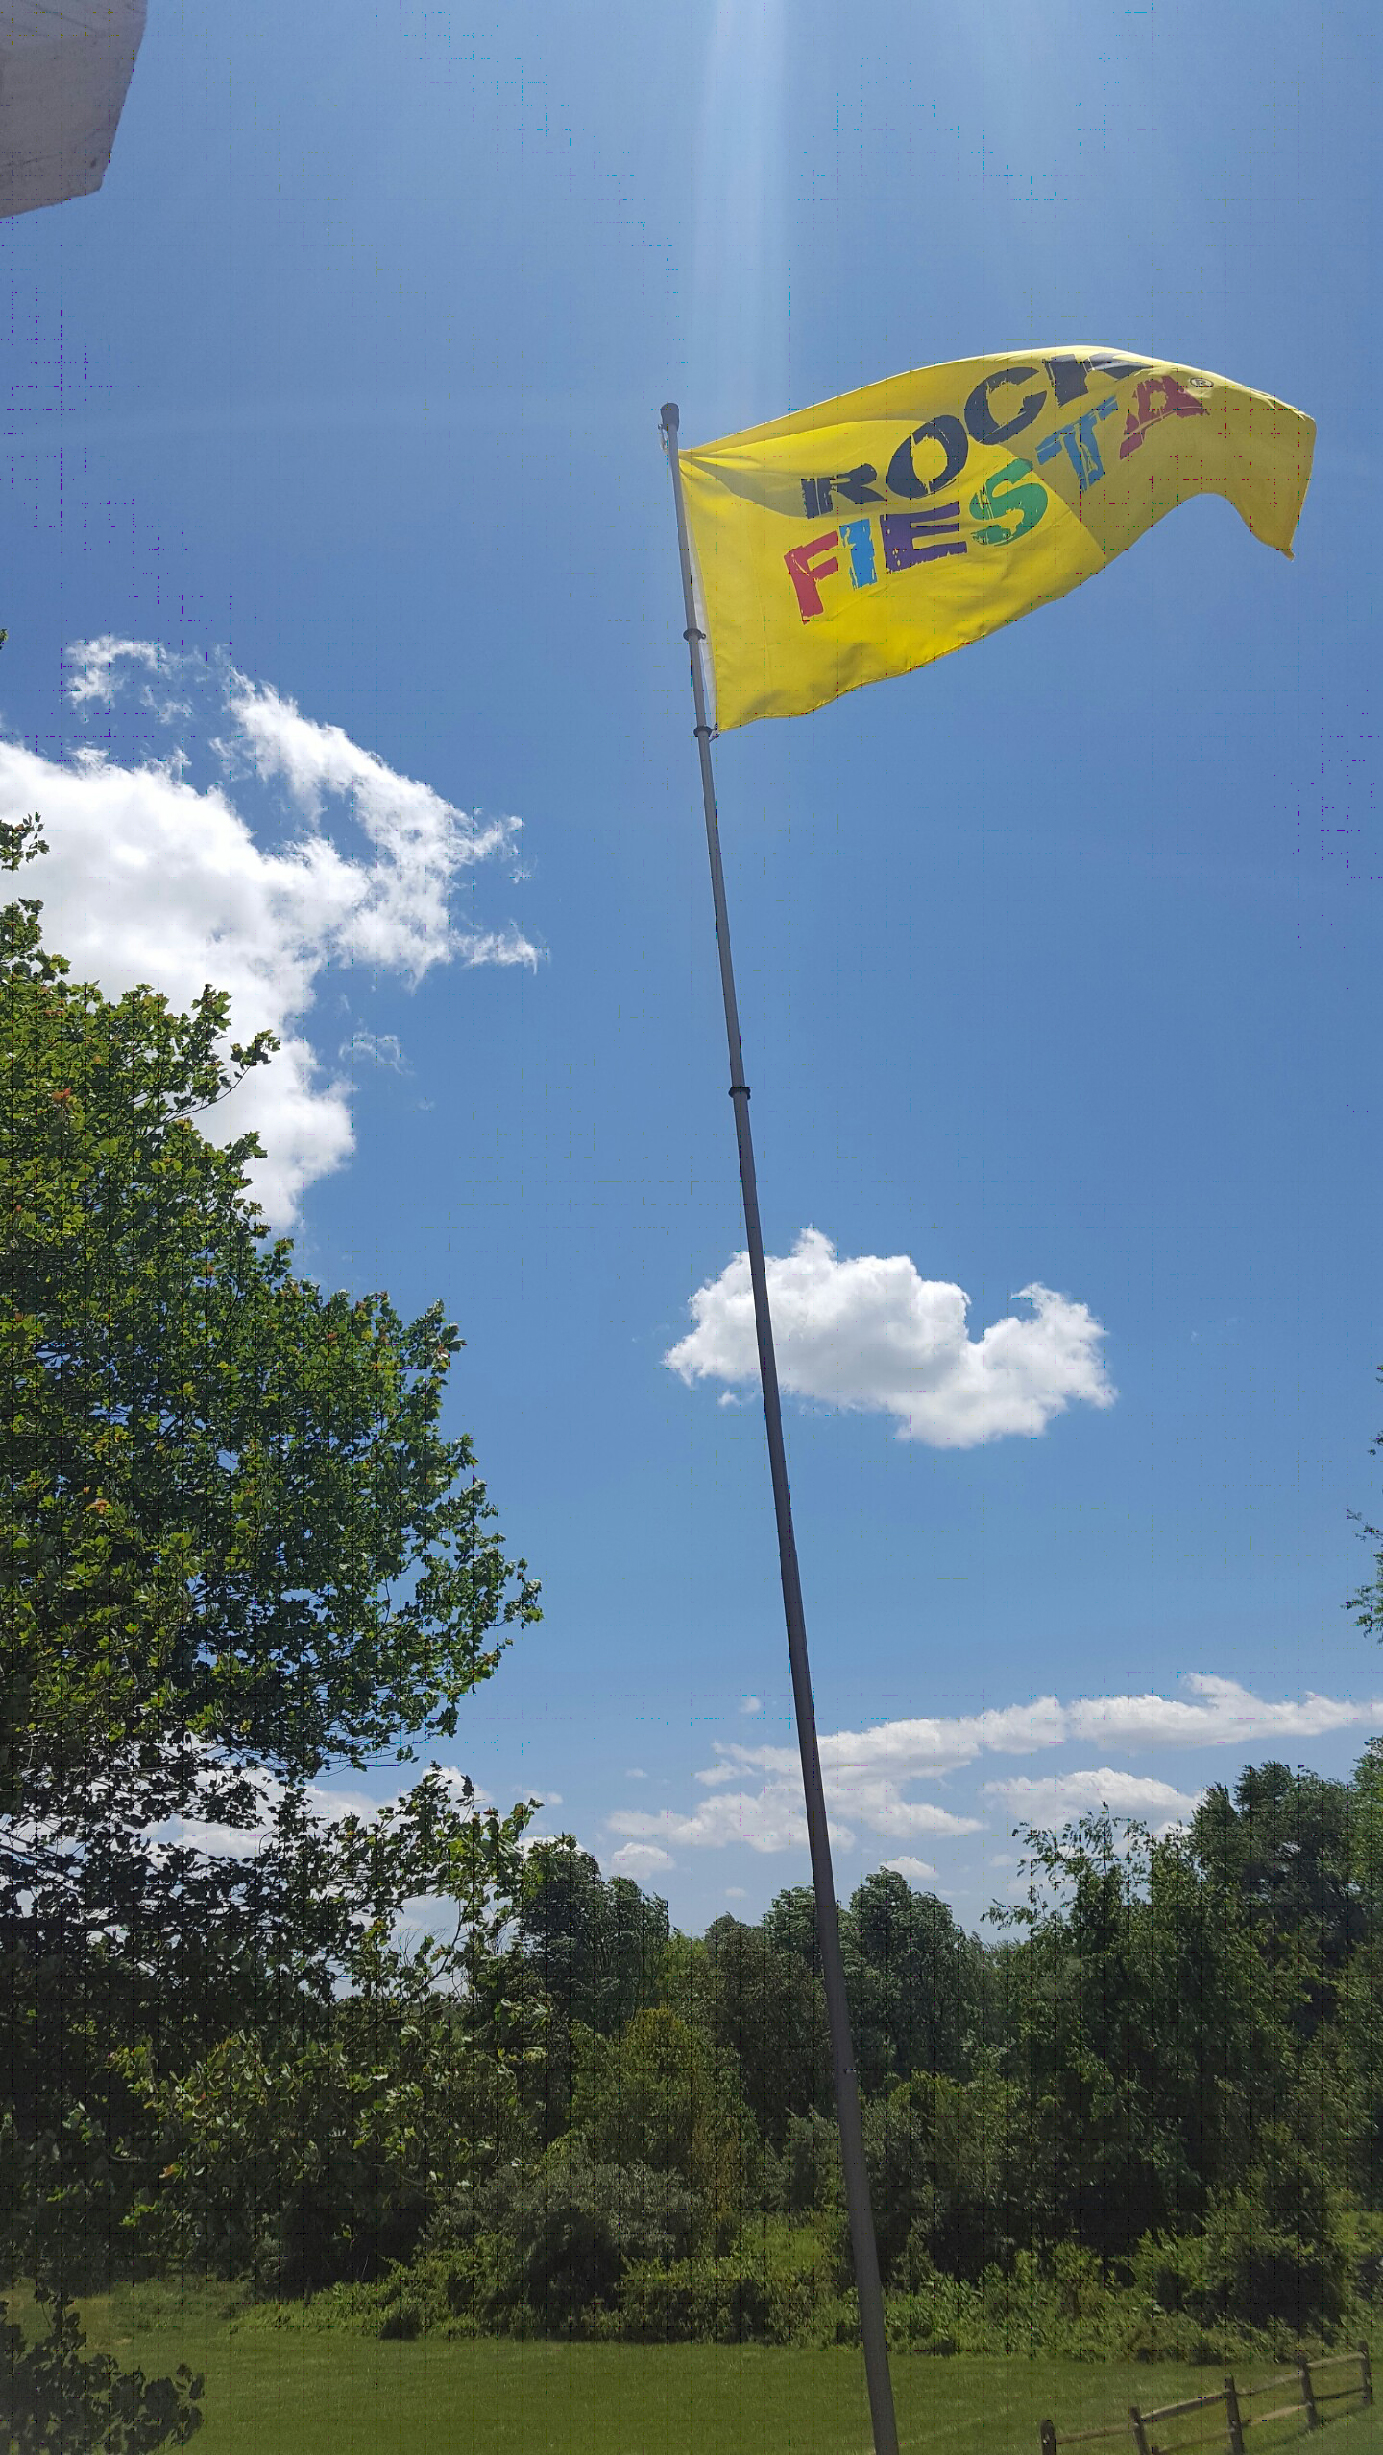 Rock Fiesta on a flag pole